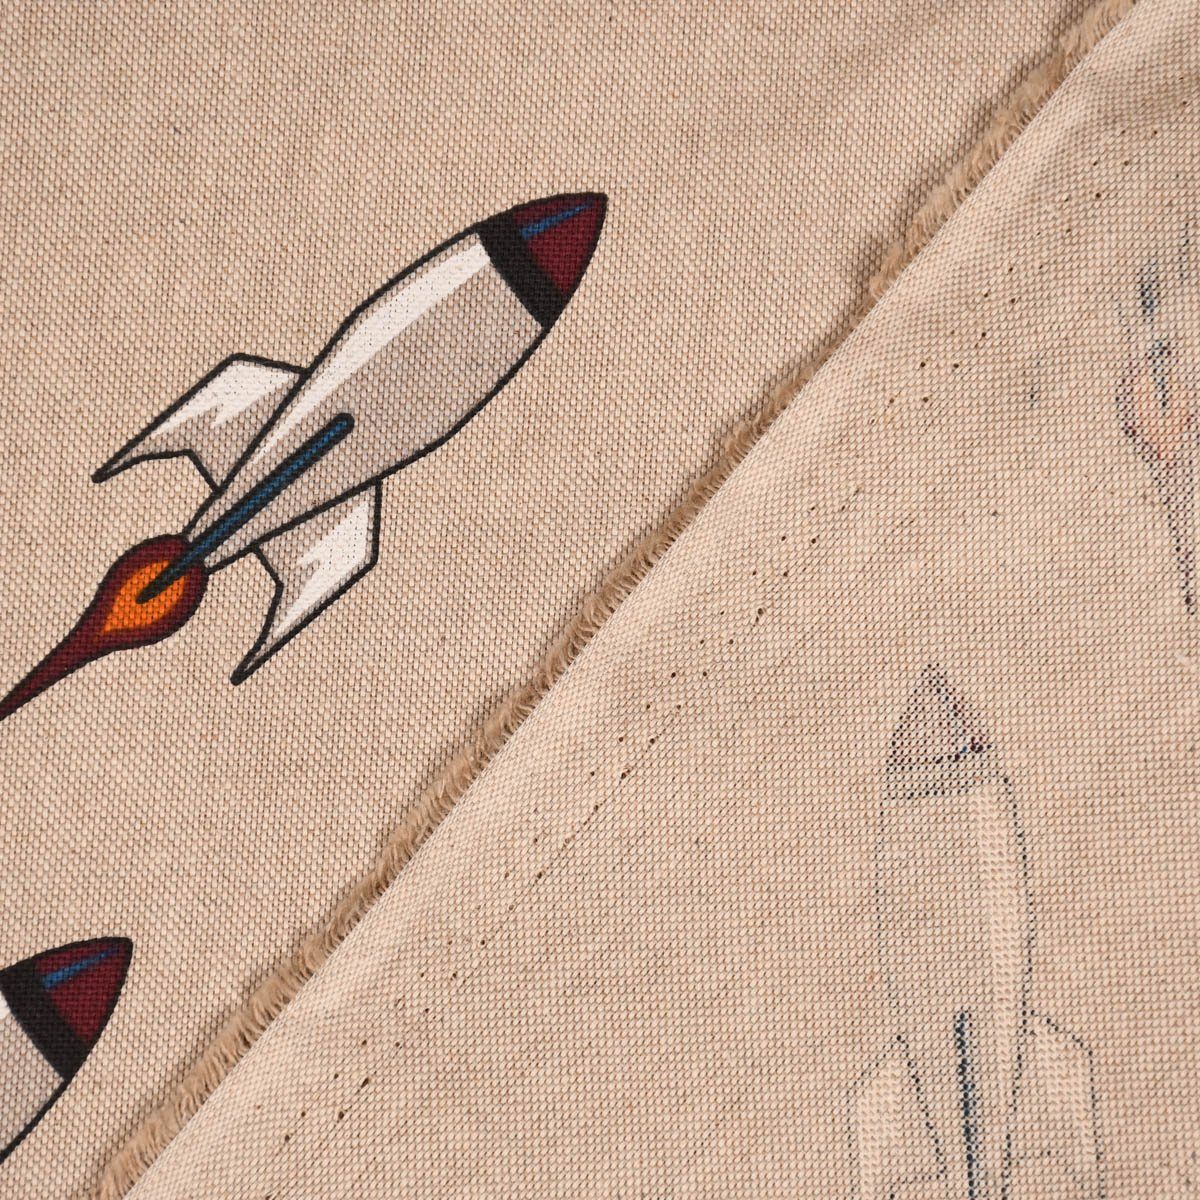 vorgewaschen Vorhang LEBEN. SCHÖNER Smokband Baumwolle, made Raketen Germany, SCHÖNER LEBEN., blickdicht, 245cm, handmade, Leinenlook Vorhang St), (1 natur Launch in Rocket